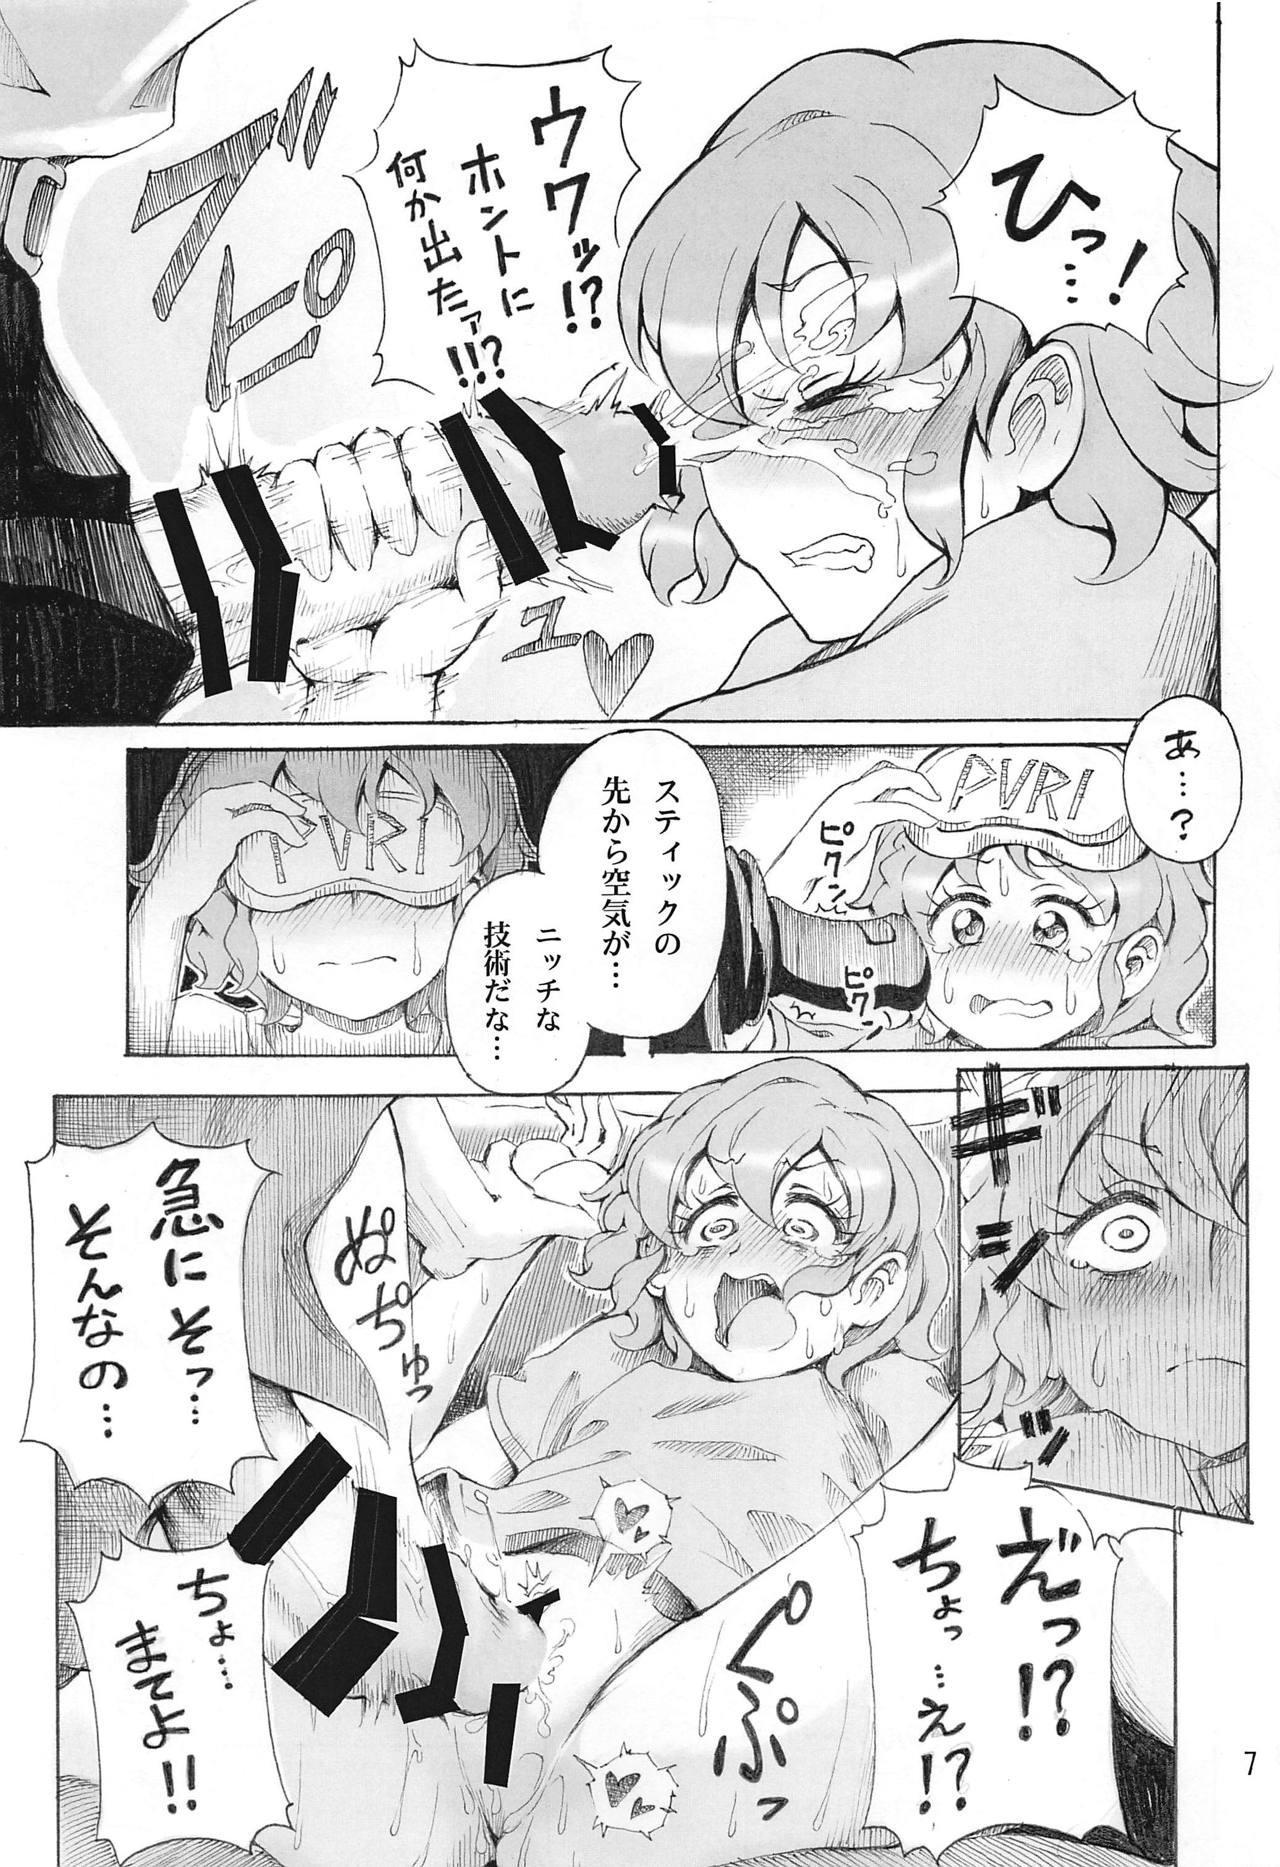 Adult Hadaka no Dorothy VR + Haru - Pripara Close Up - Page 8